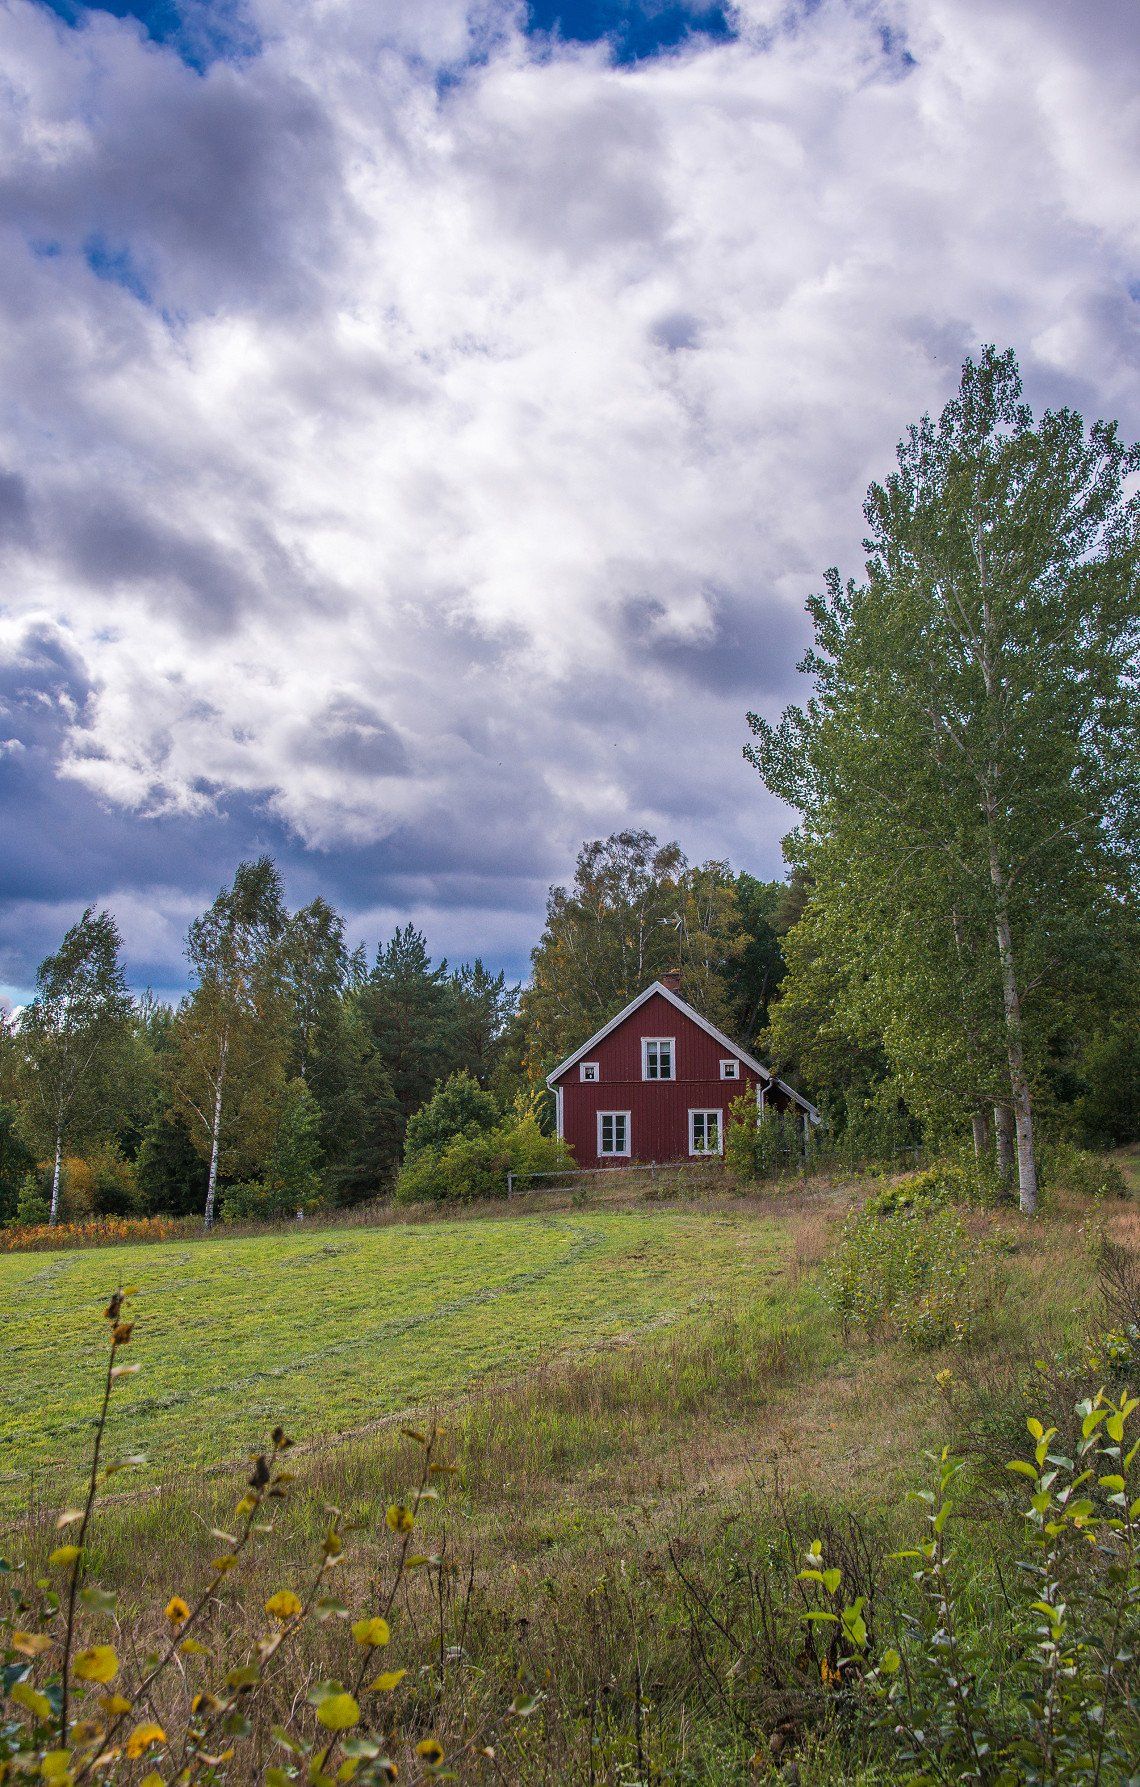 Southern Sweden in September